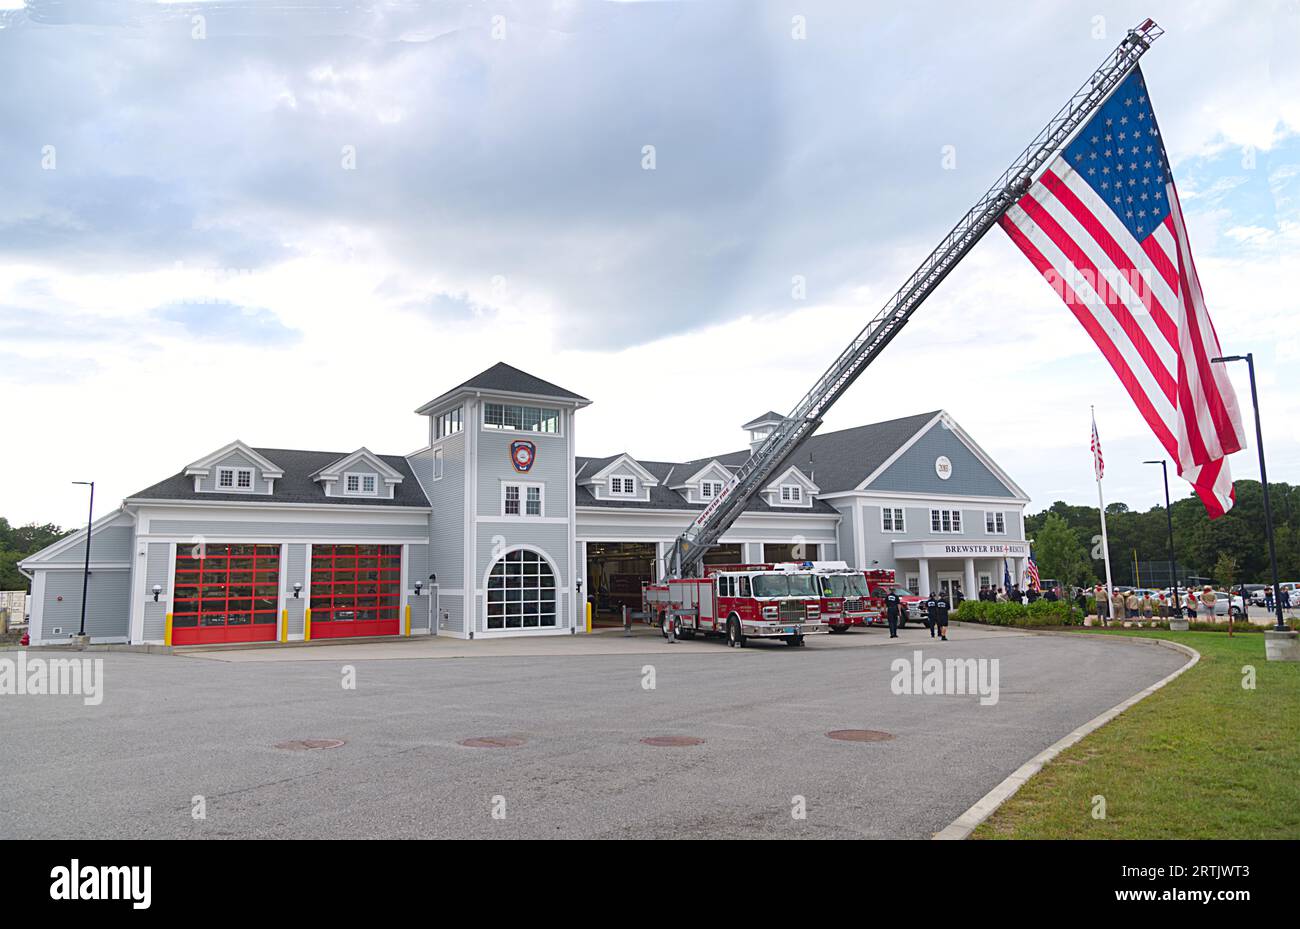 911 cerimonia di commemorazione presso la sede centrale dei vigili del fuoco di Brewster, Massachusetts, a Cape Cod, Stati Uniti. Sede centrale dei vigili del fuoco di Brewster con grande bandiera americana in mostra. Foto Stock